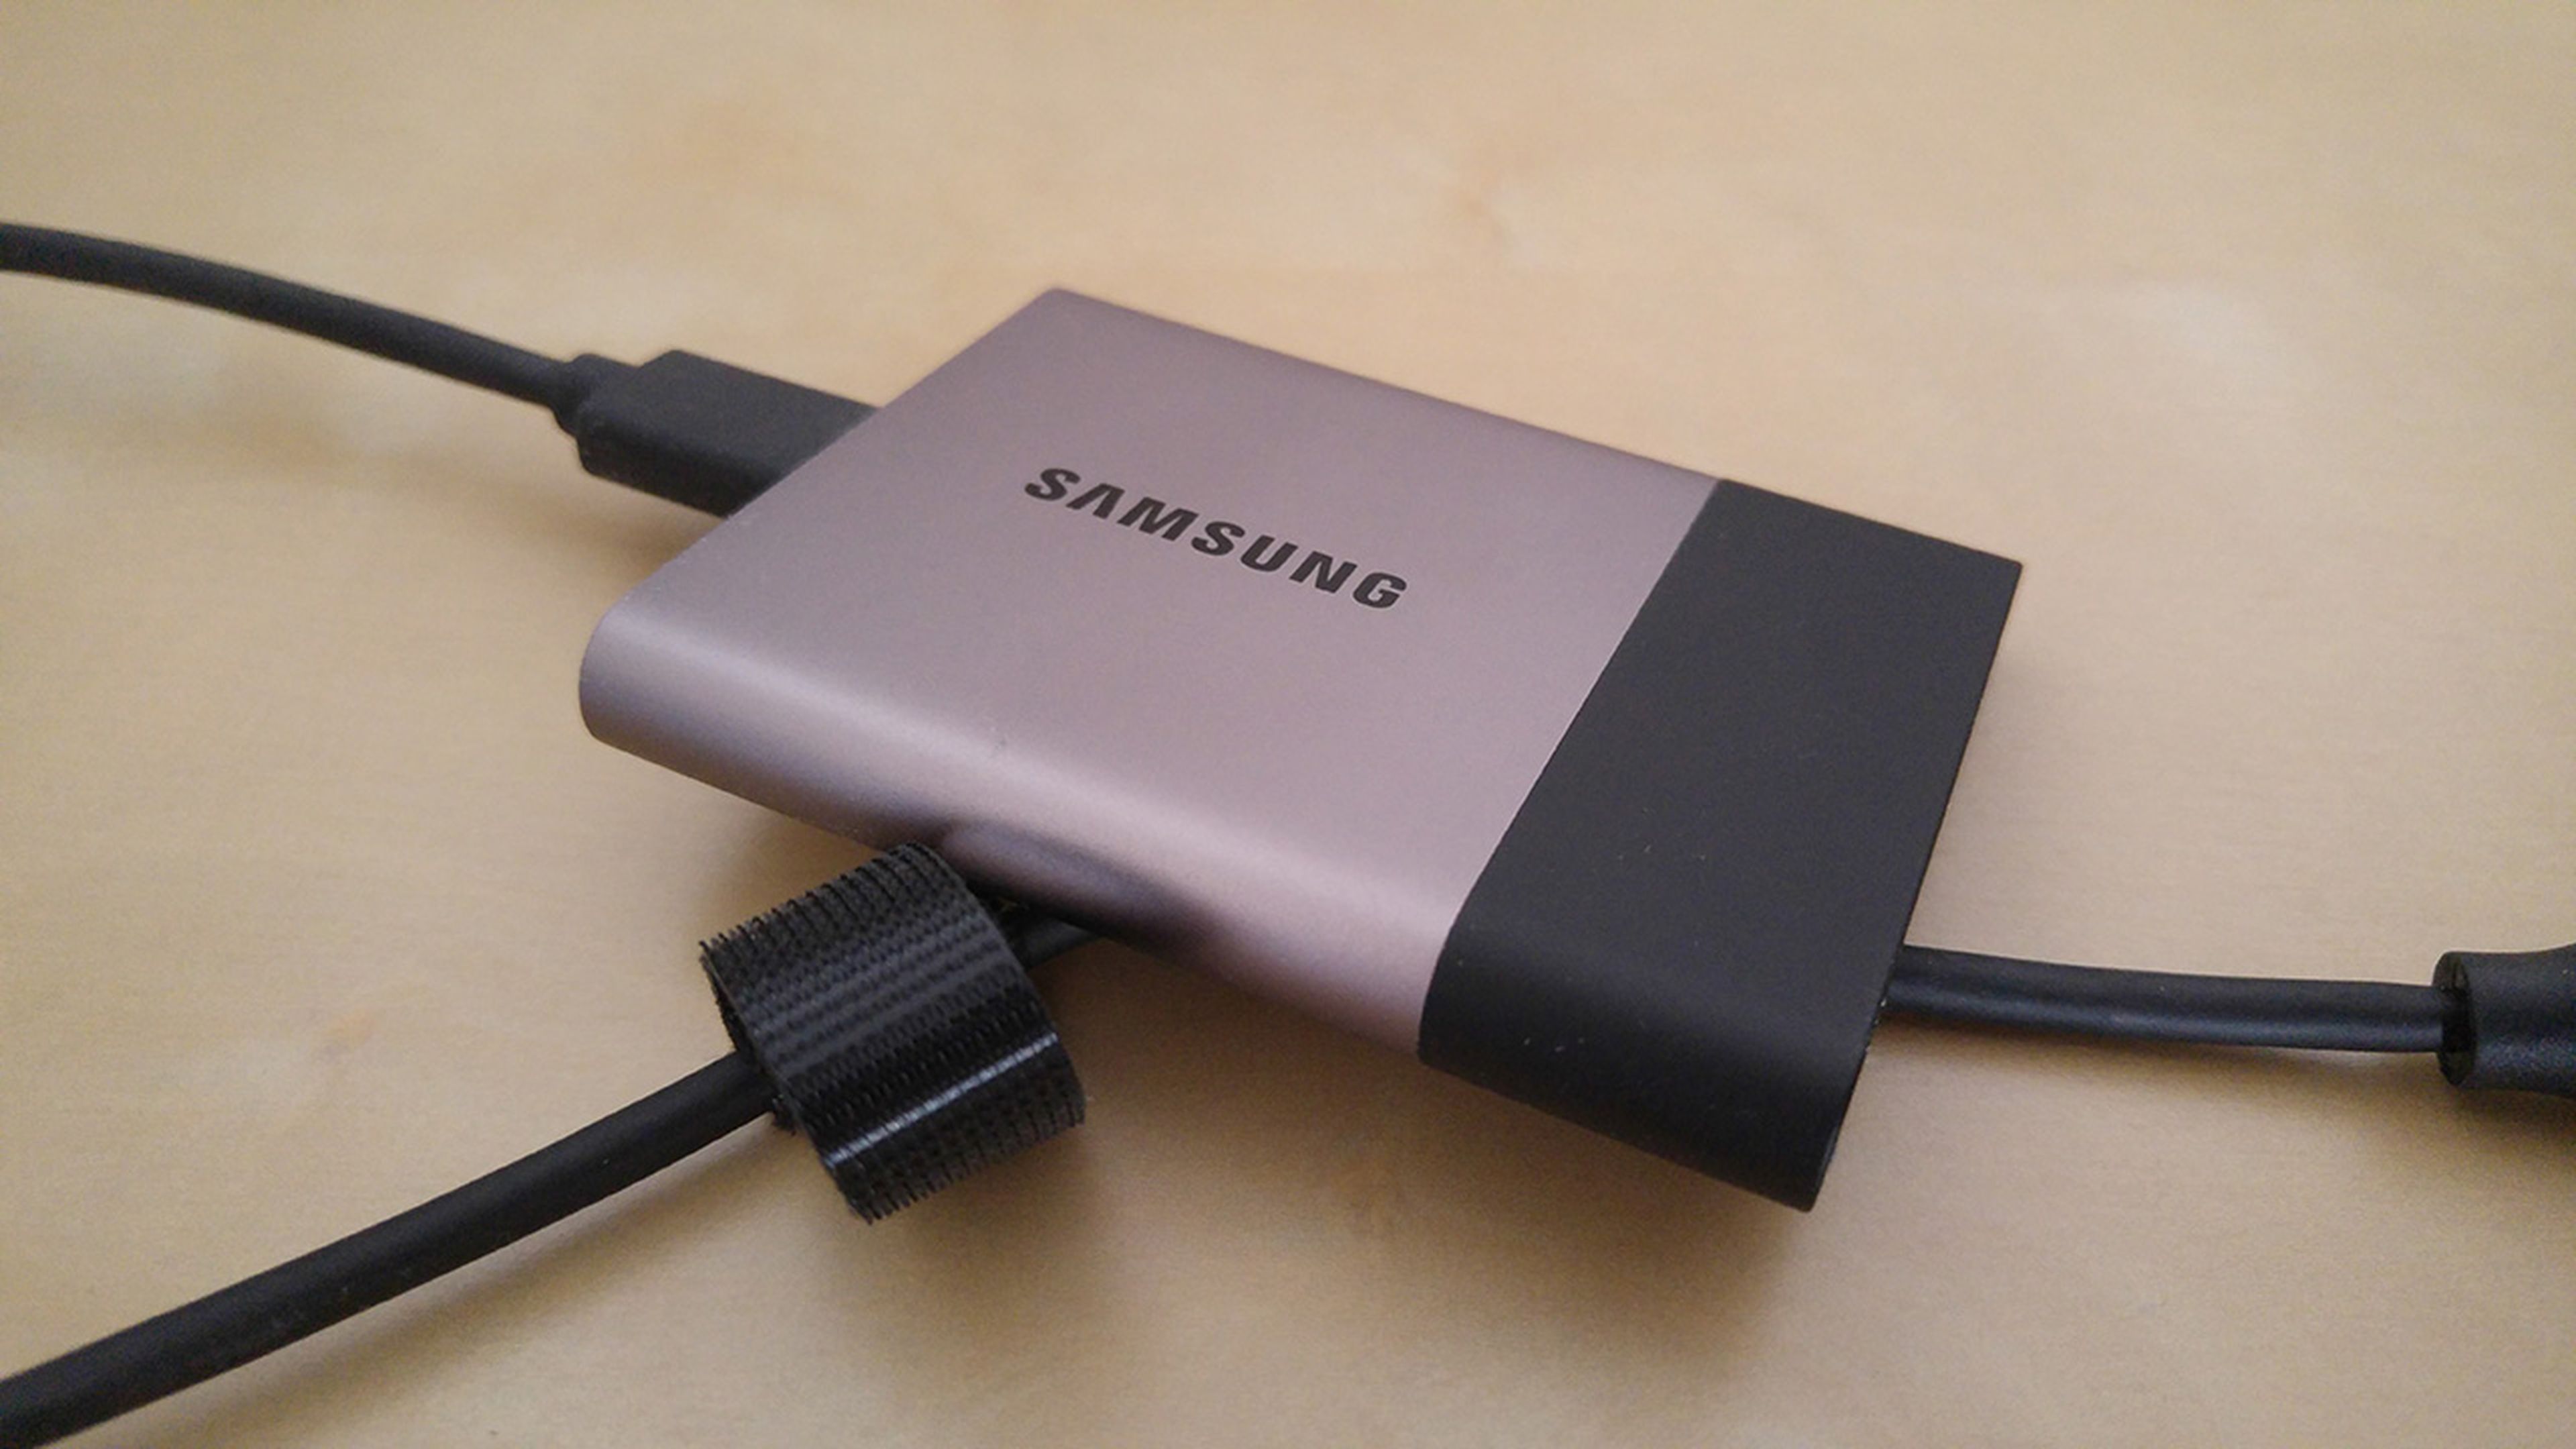 Samsung SSD T3, y opinión | Computer Hoy